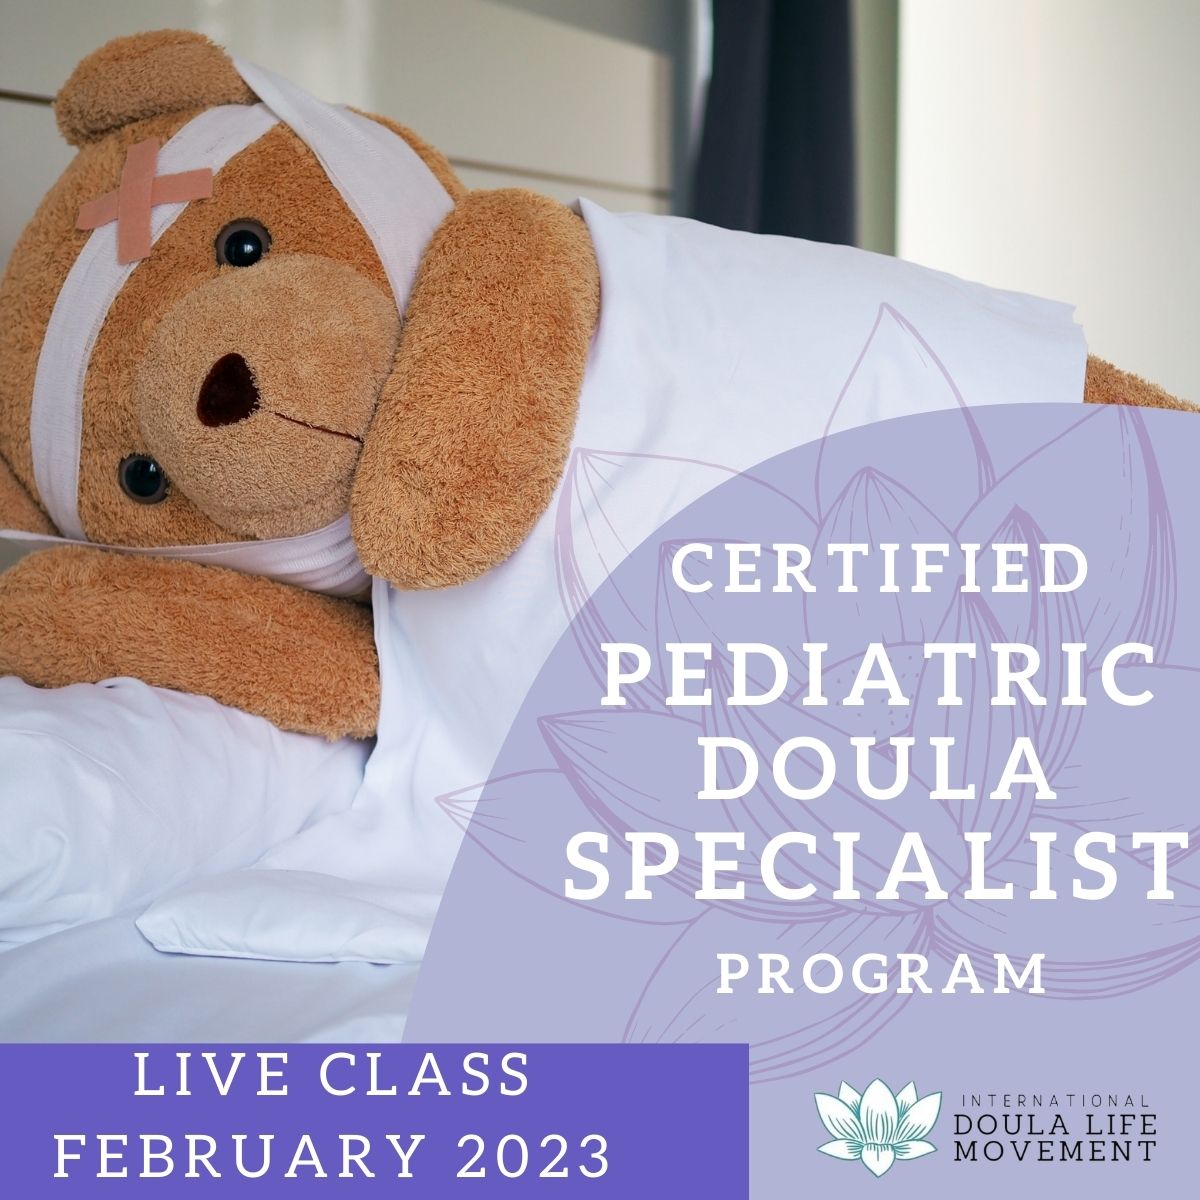 Certified Pediatric Doula Specialist Program